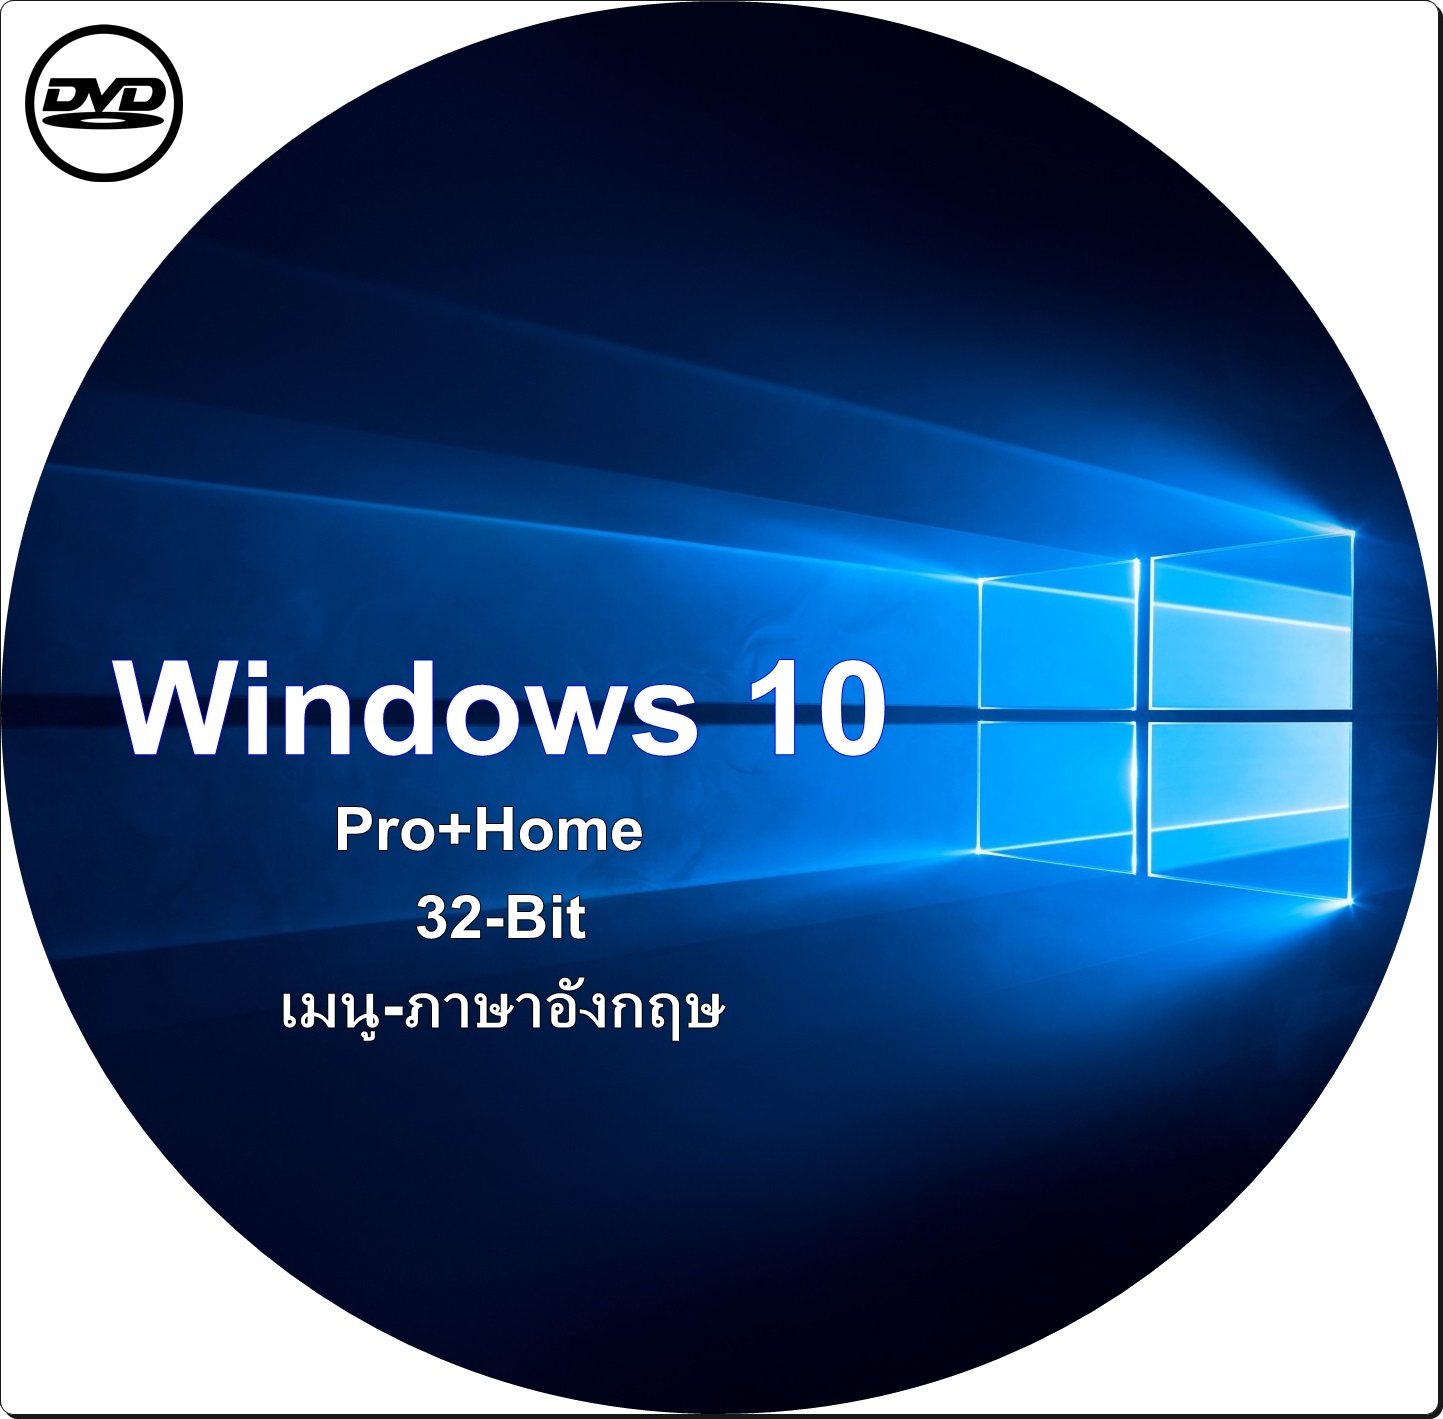 dvd-windows 10 pro+home 32-bit เมนู-ภาษาอังกฤษ #activate ใช้งานได้จริงกล้ารับประกัน